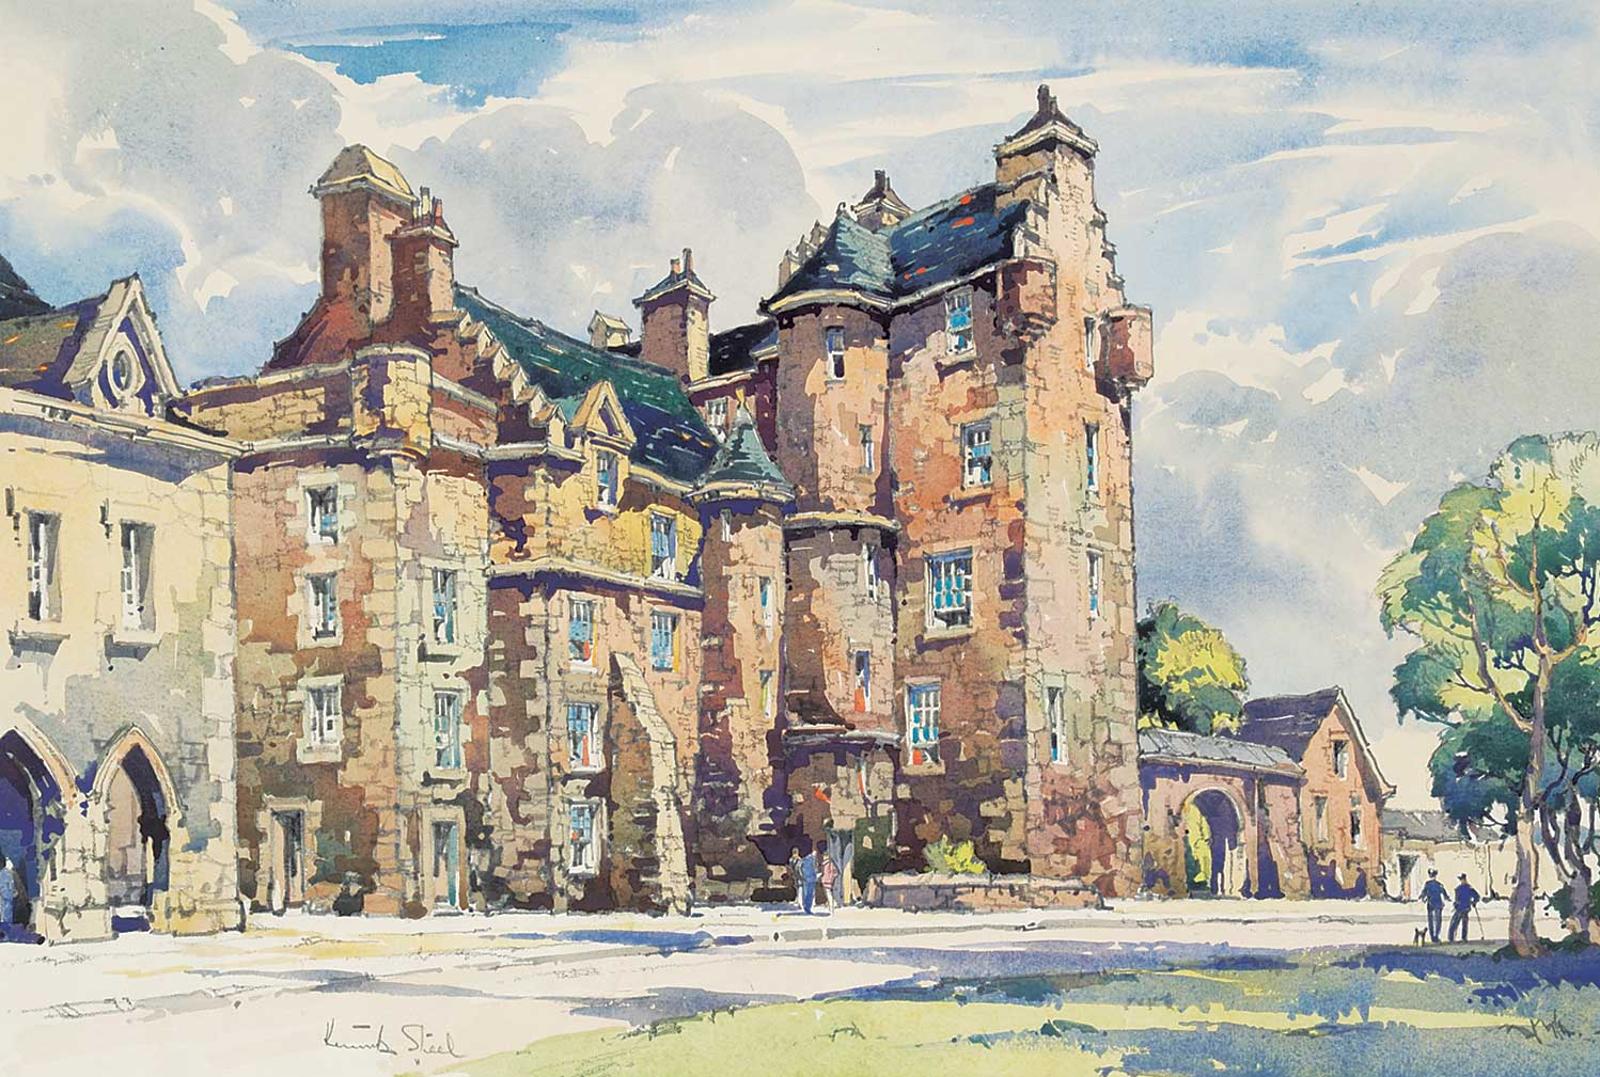 Kenneth Steel - Untitled - Dornoch Castle, Sutherland, Scotland